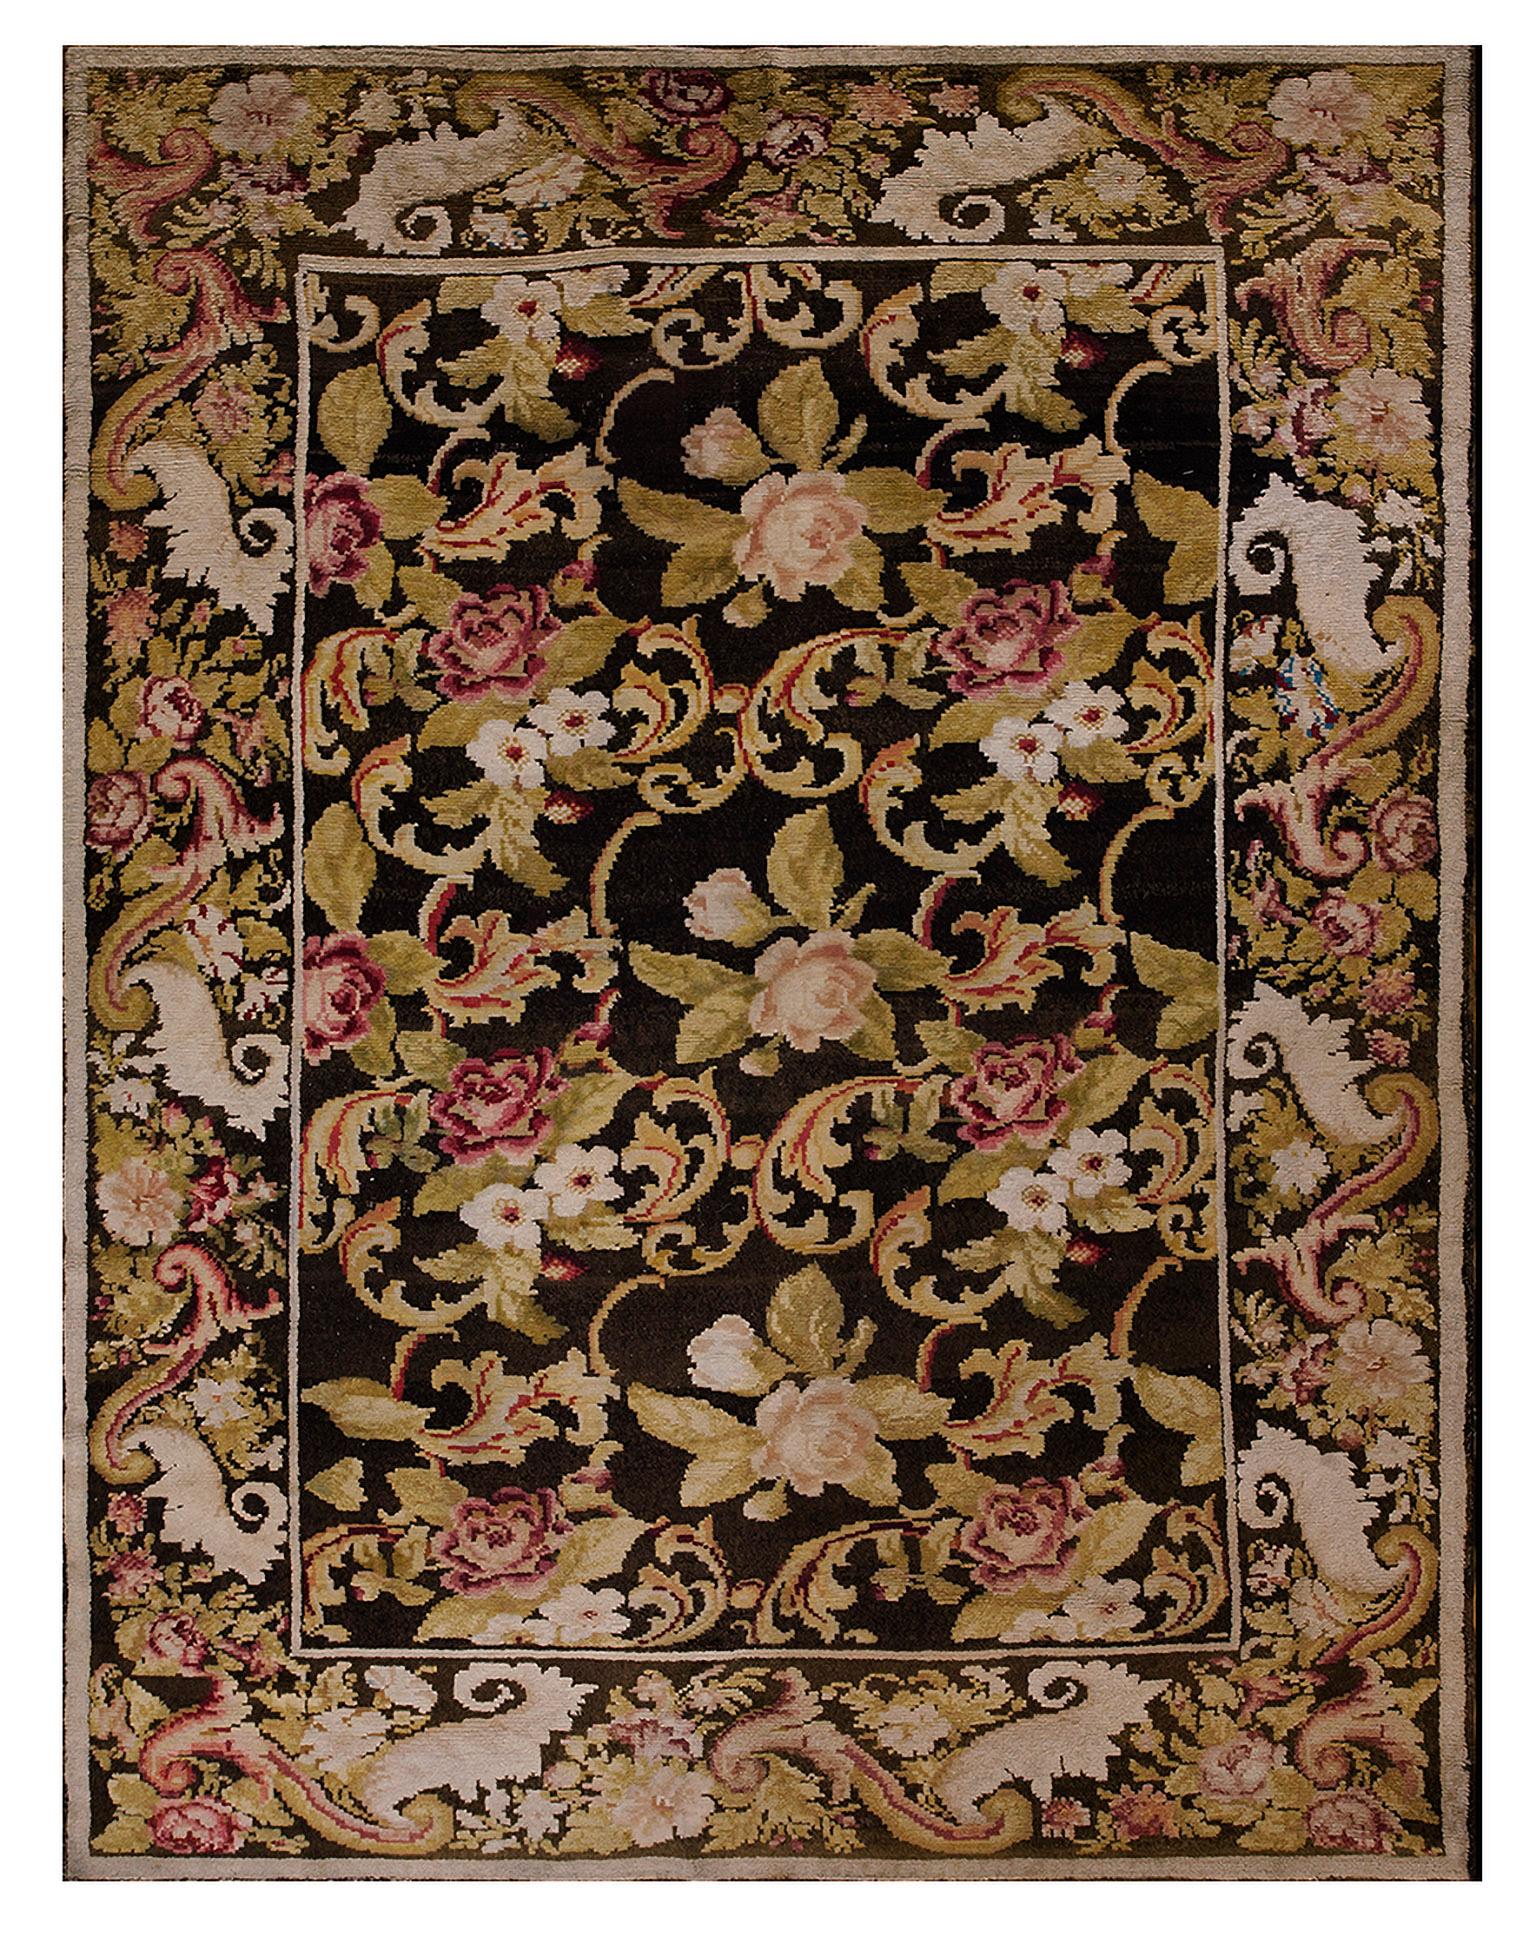 Ukrainischer Florteppich aus der Mitte des 19. Jahrhunderts ( 7'3" x 9'3" - 222 x 282")